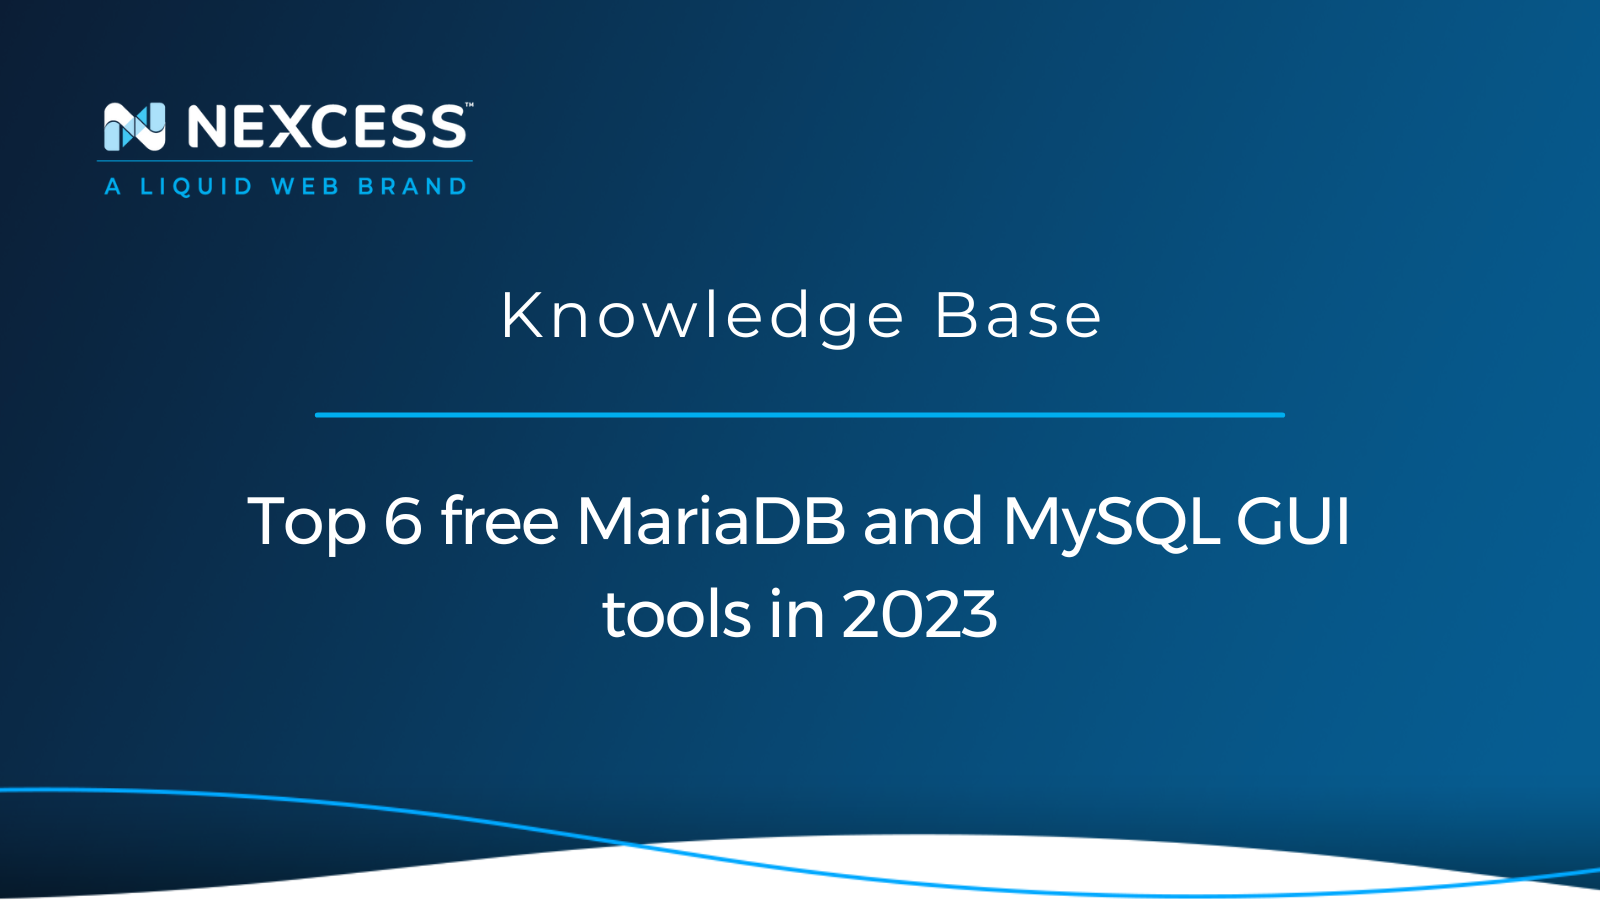 Top 6 free MariaDB and MySQL GUI tools in 2023